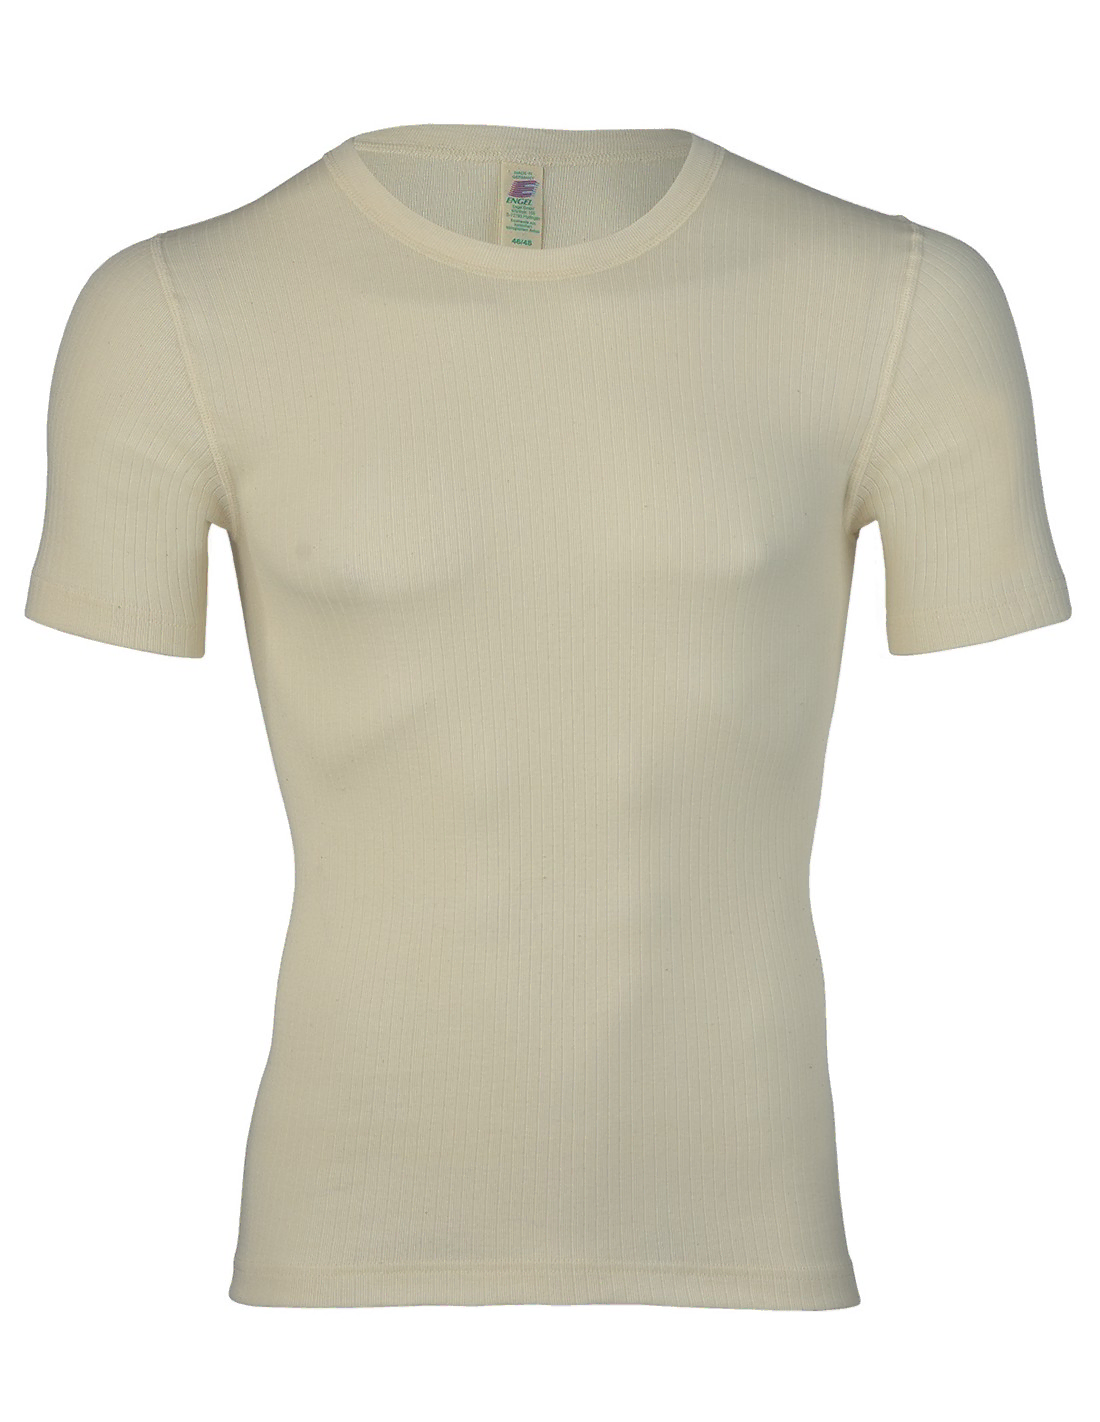 Image of Heren T-Shirt Katoen Engel Natur, Kleur Gebroken wit, Maat 50/52 - Large